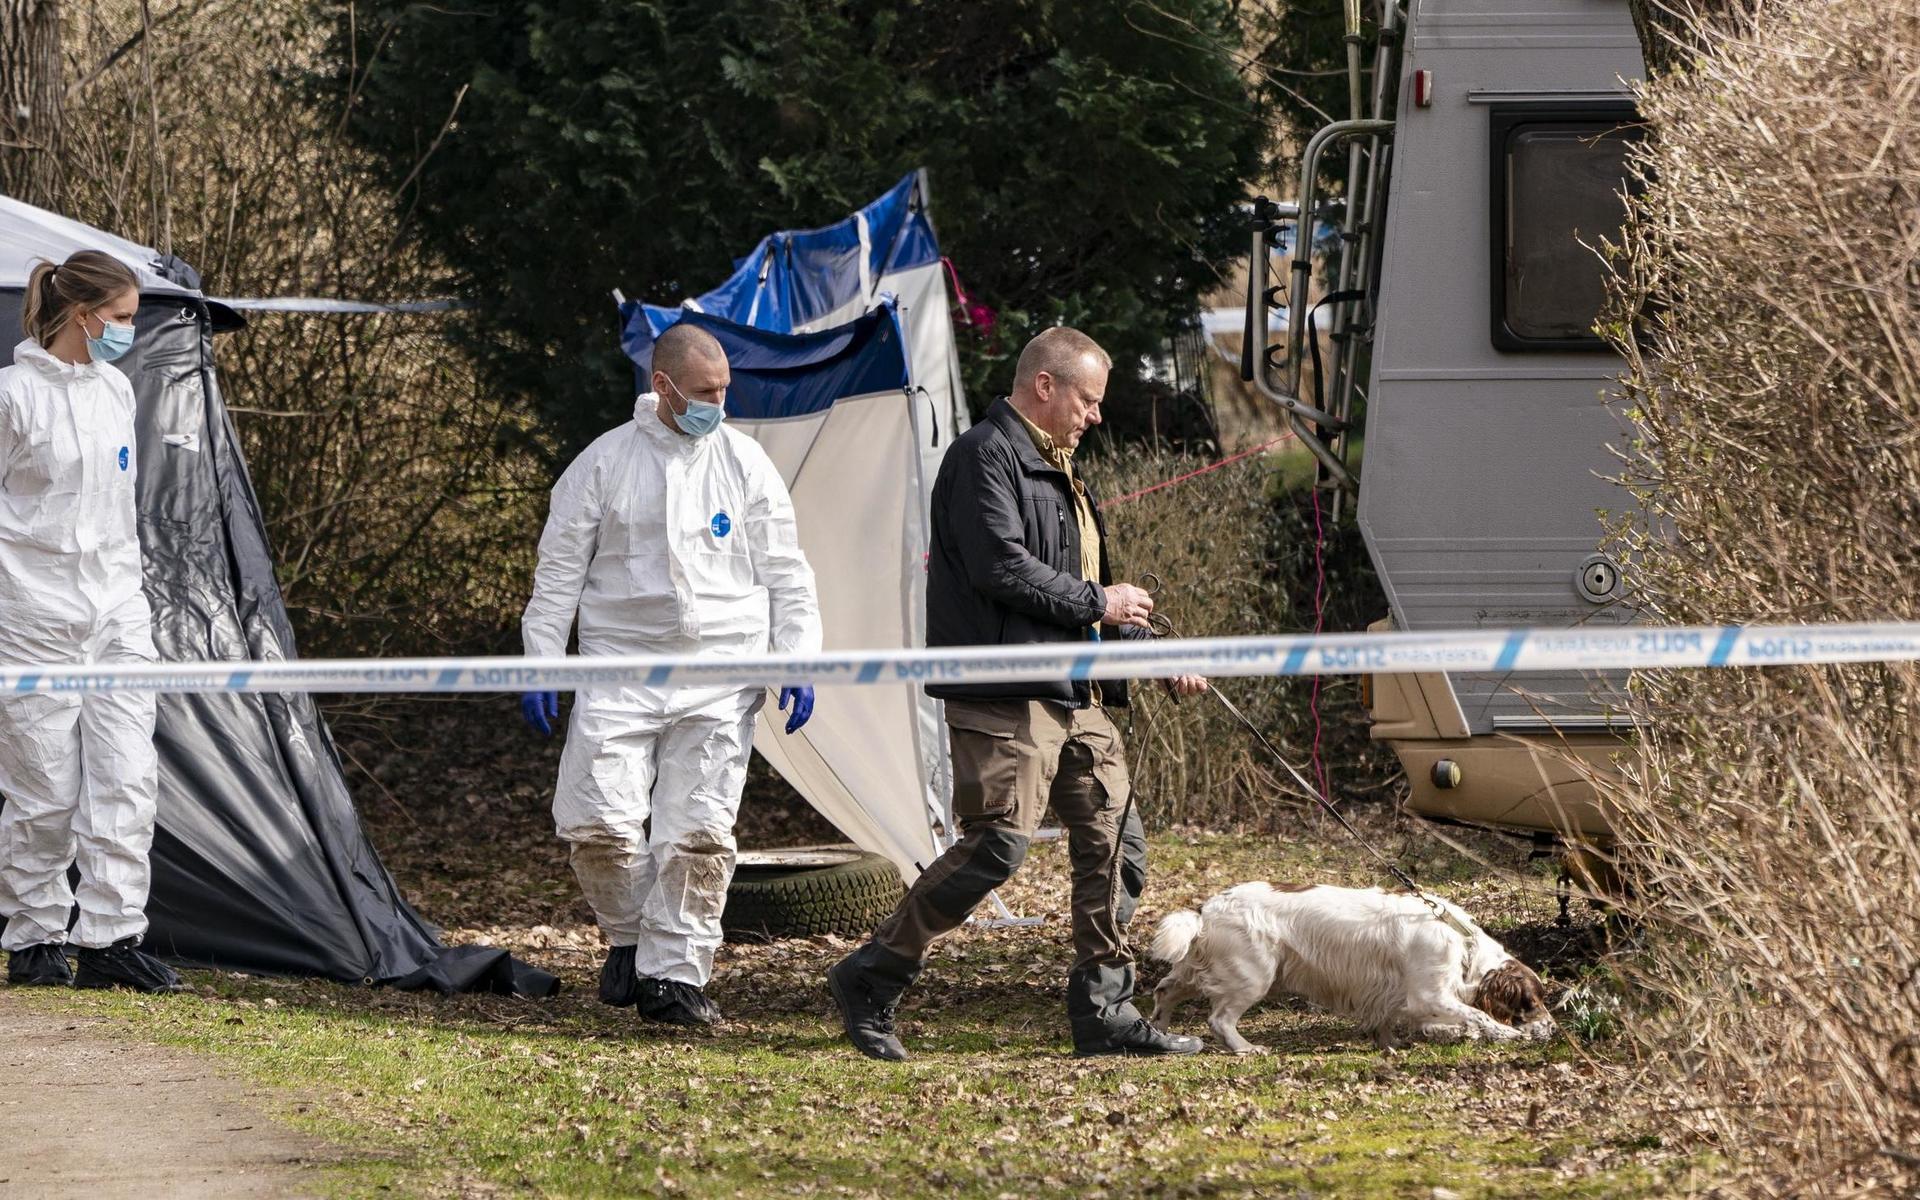 Den man som sitter anhållen misstänkt för mordet på en 18-årig kvinna i Höör har erkänt att han dödade henne men nekar till brott.
